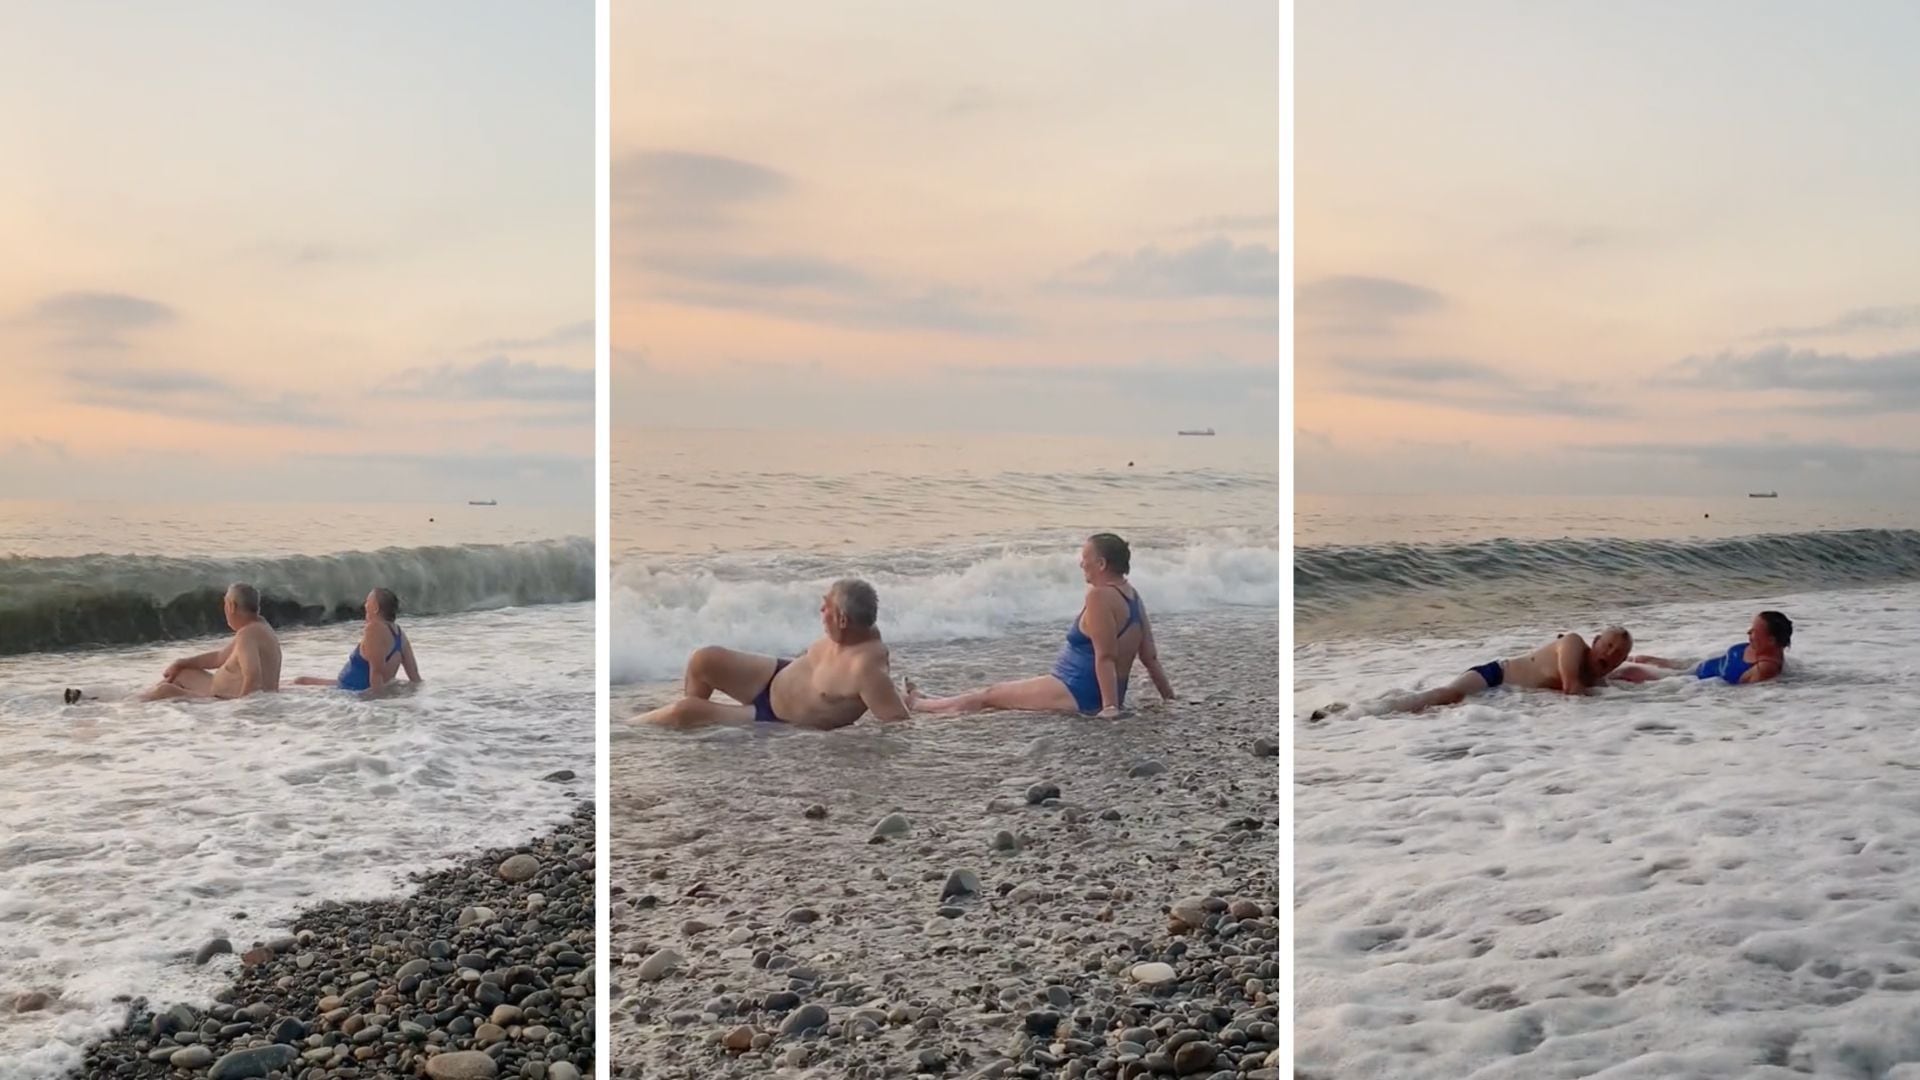 El video muestra a una pareja disfrutando de las olas del mar en un bello atardecer